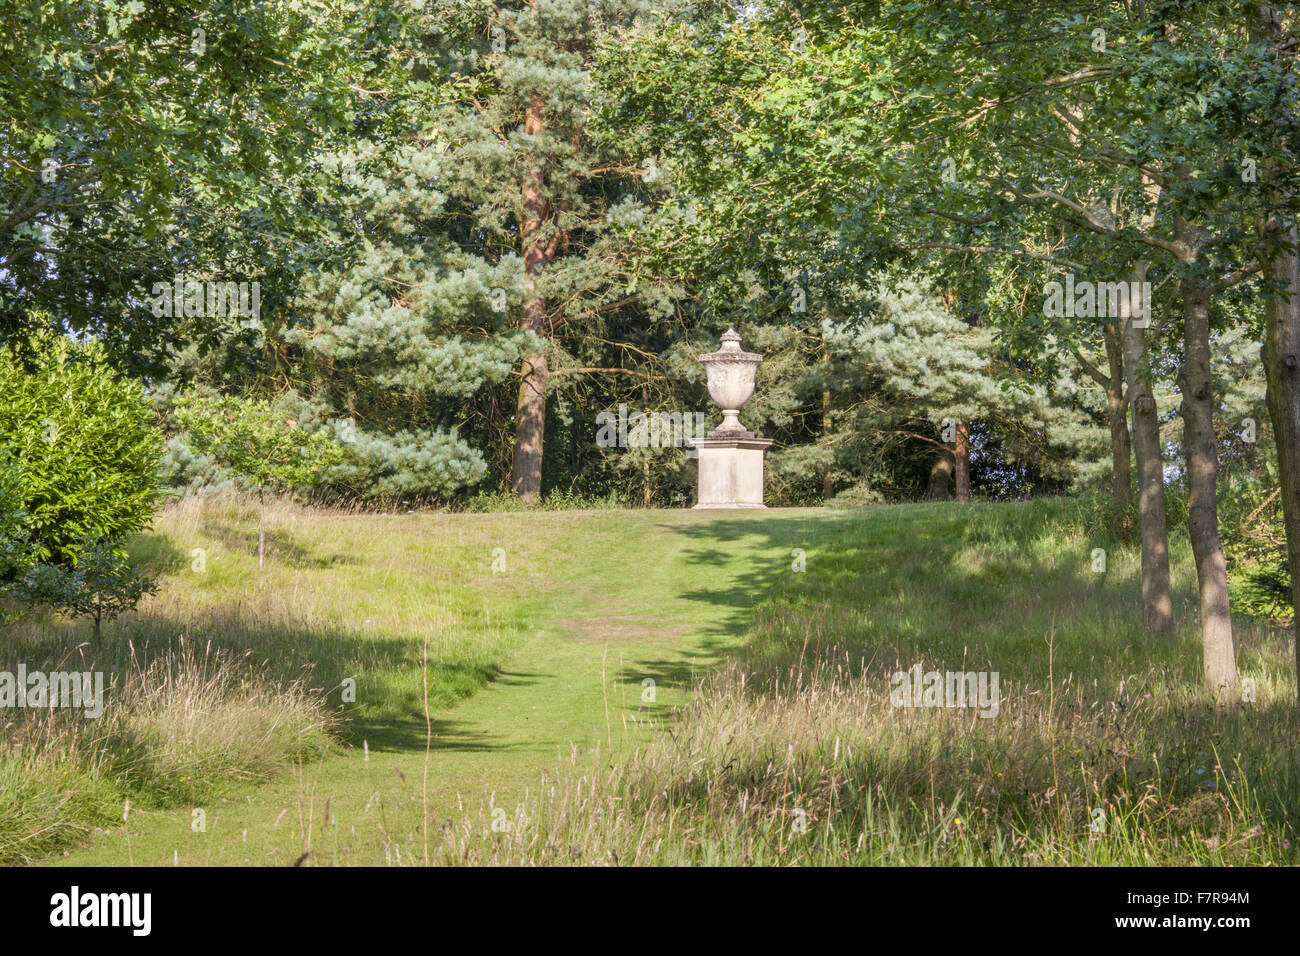 Urne am Ende eines Weges Grass Blickling Estate, Norfolk. Blickling ist ein Turm aus rotem Backstein jakobinischen Herrenhaus, sitzen in wunderschönen Gärten und Parks. Stockfoto